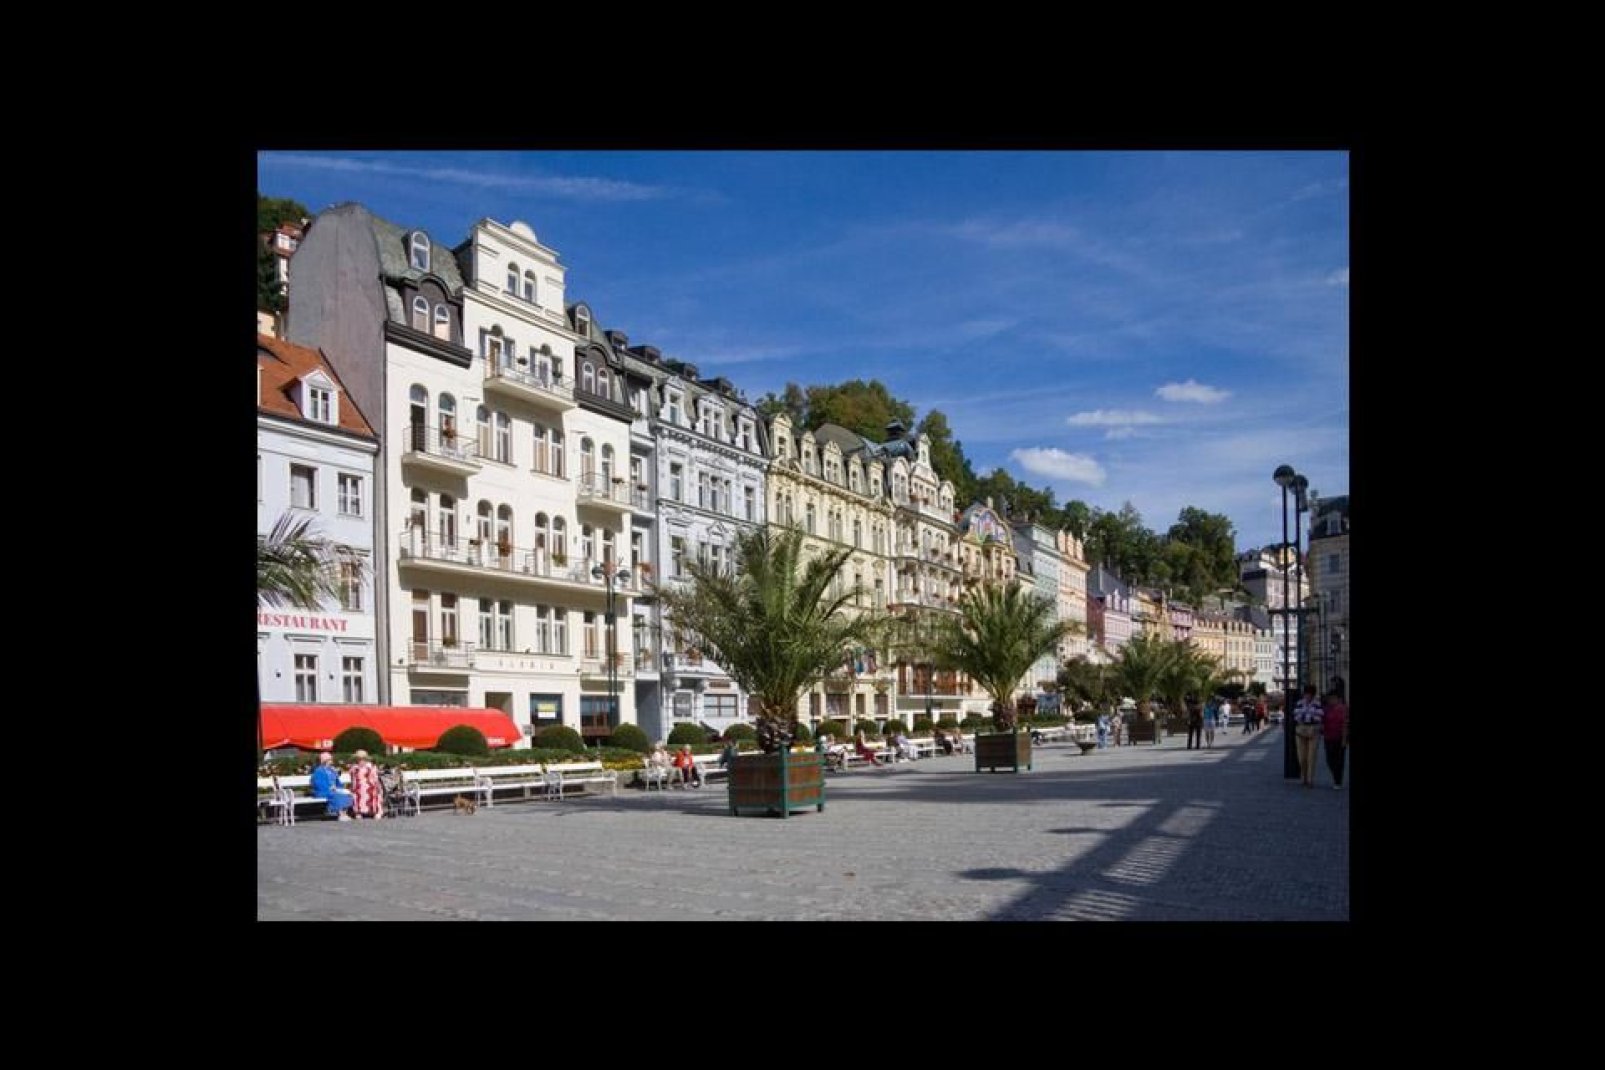 Una piazza di Karlovy Vary, o Karlsbad, che significa "La spa di Carlo", poiché la città è costruita vicino ad una fonte di acqua minerale.